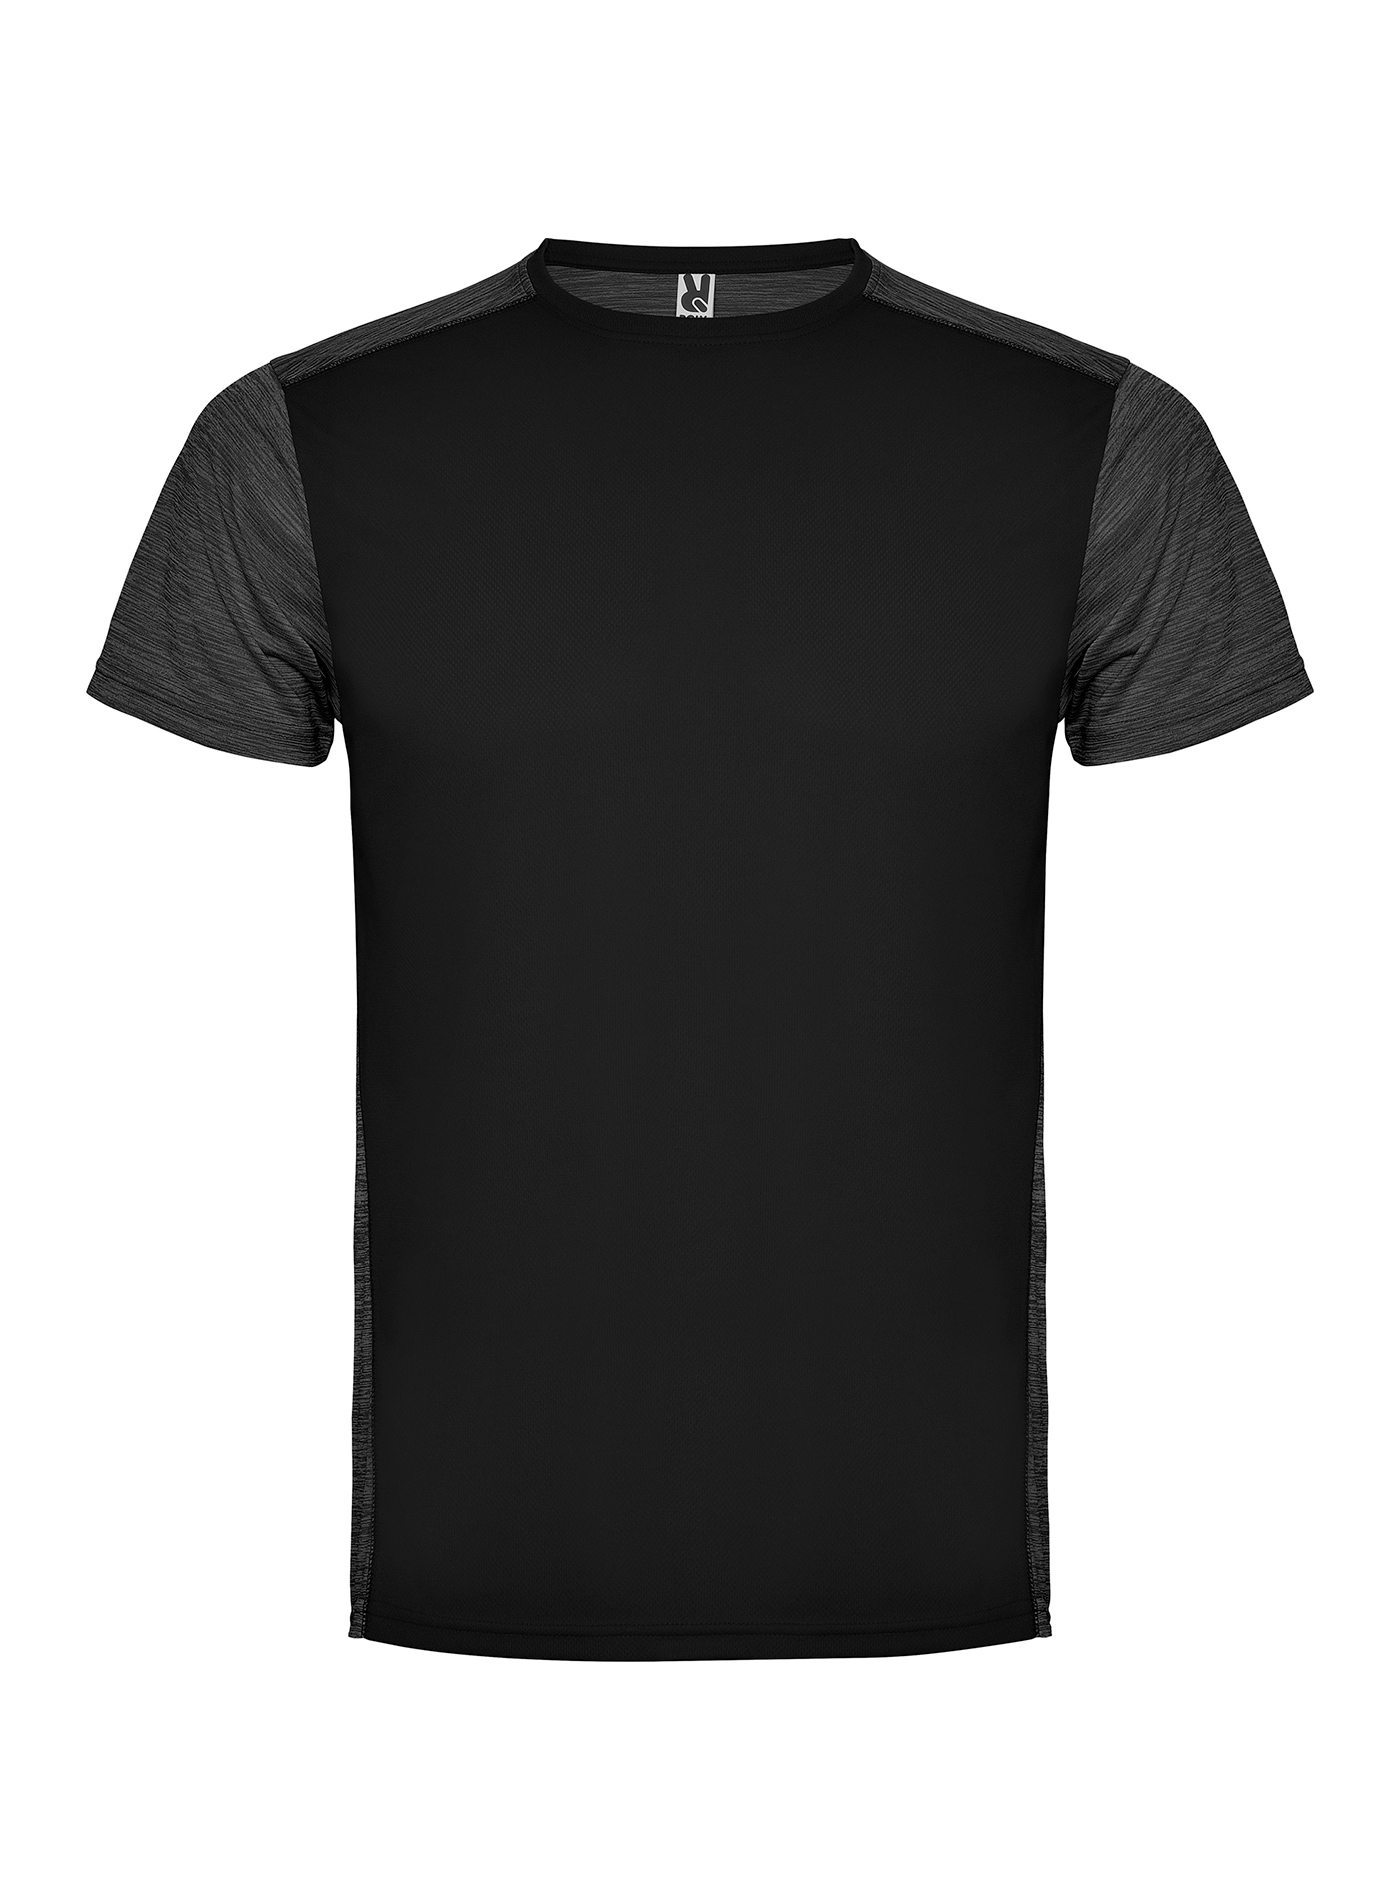 Pánské/Dětské sportovní tričko Roly Zolder - Černá a šedá XL